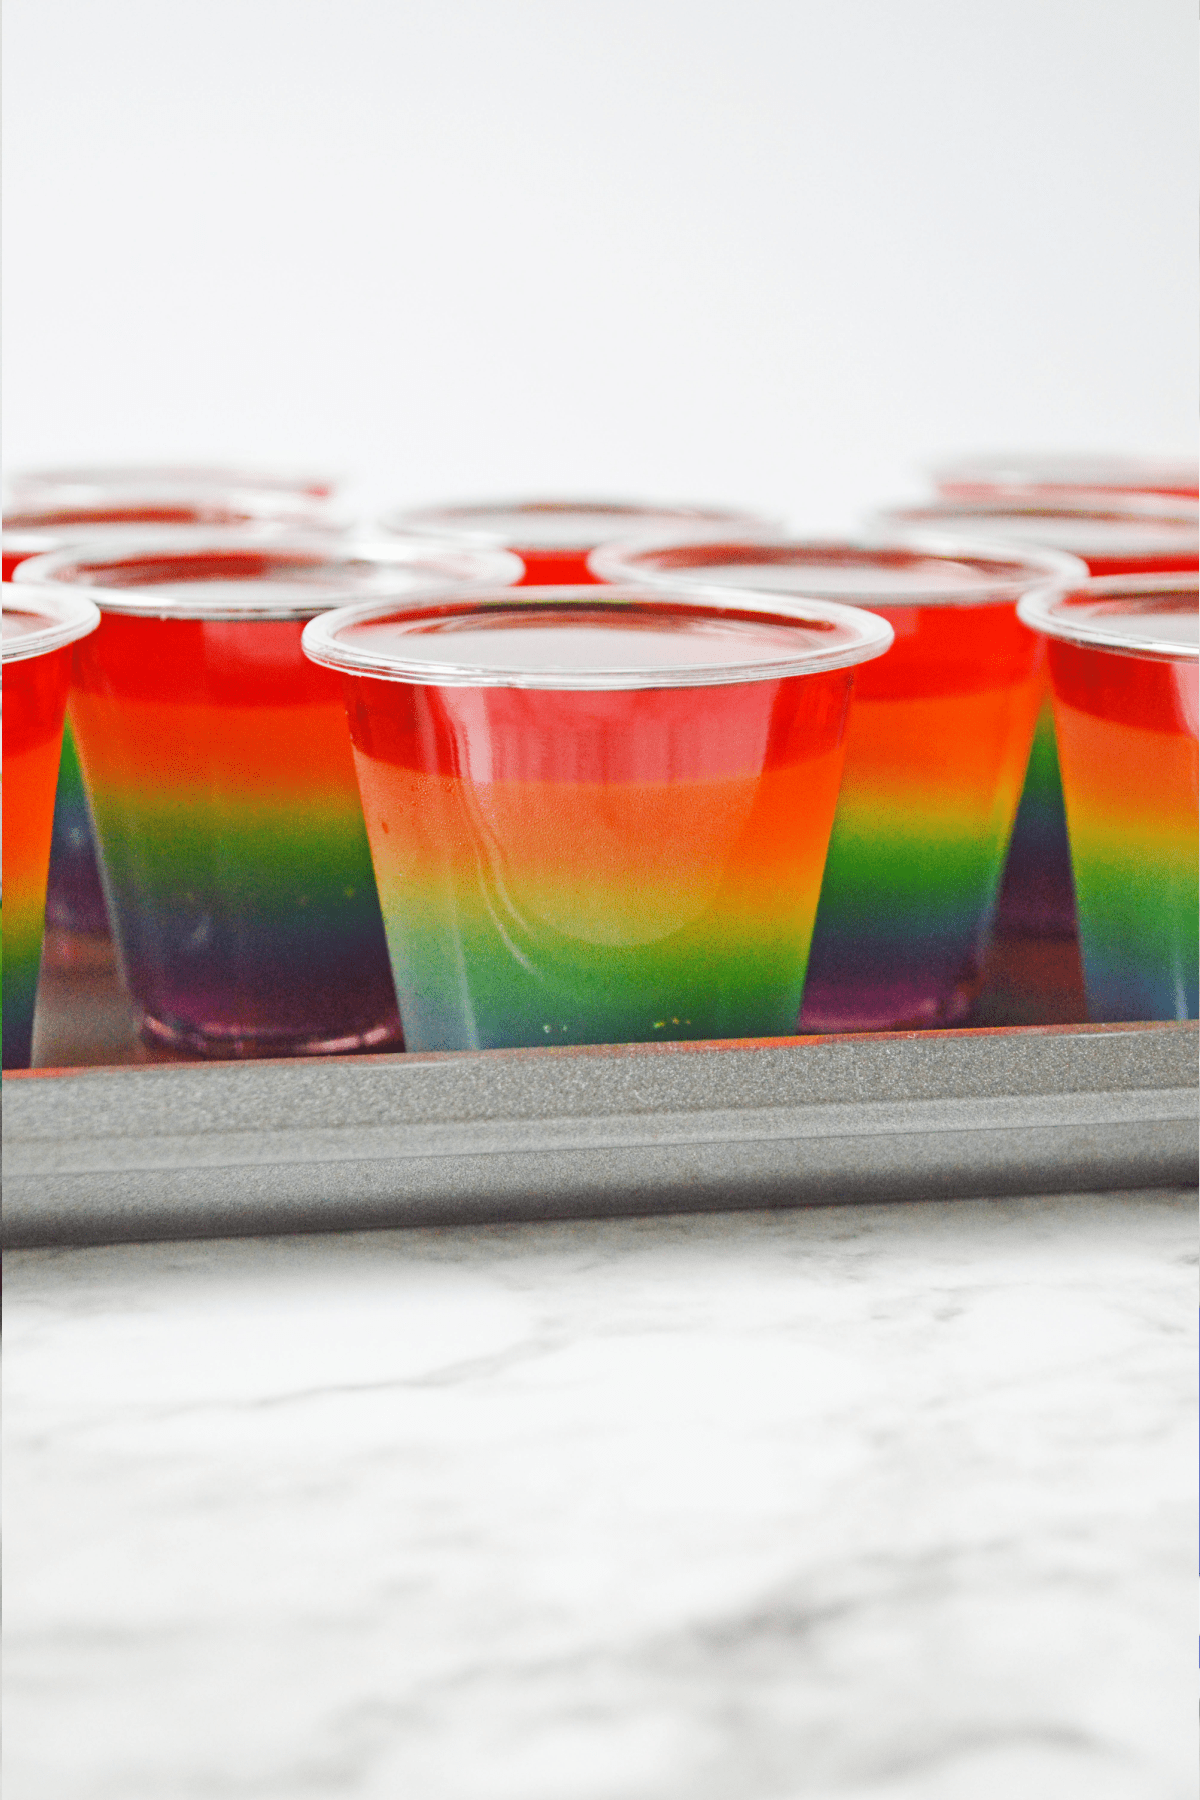 Rainbow jello shots on baking sheet